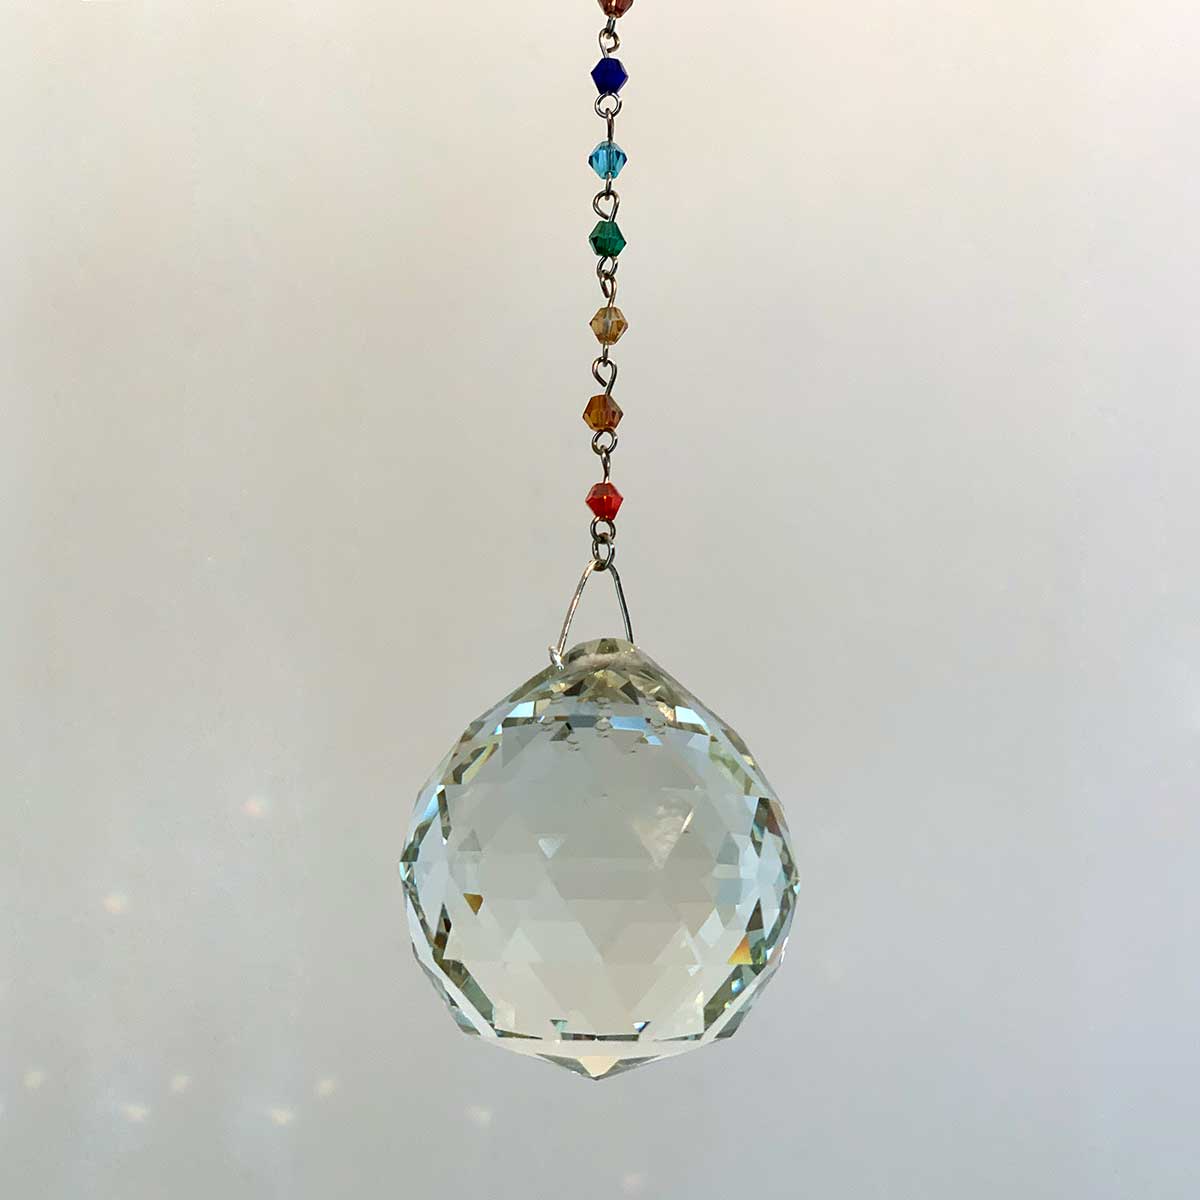 Cristal Feng Shui 100% cristal avec chaîne acier et perles multicolores